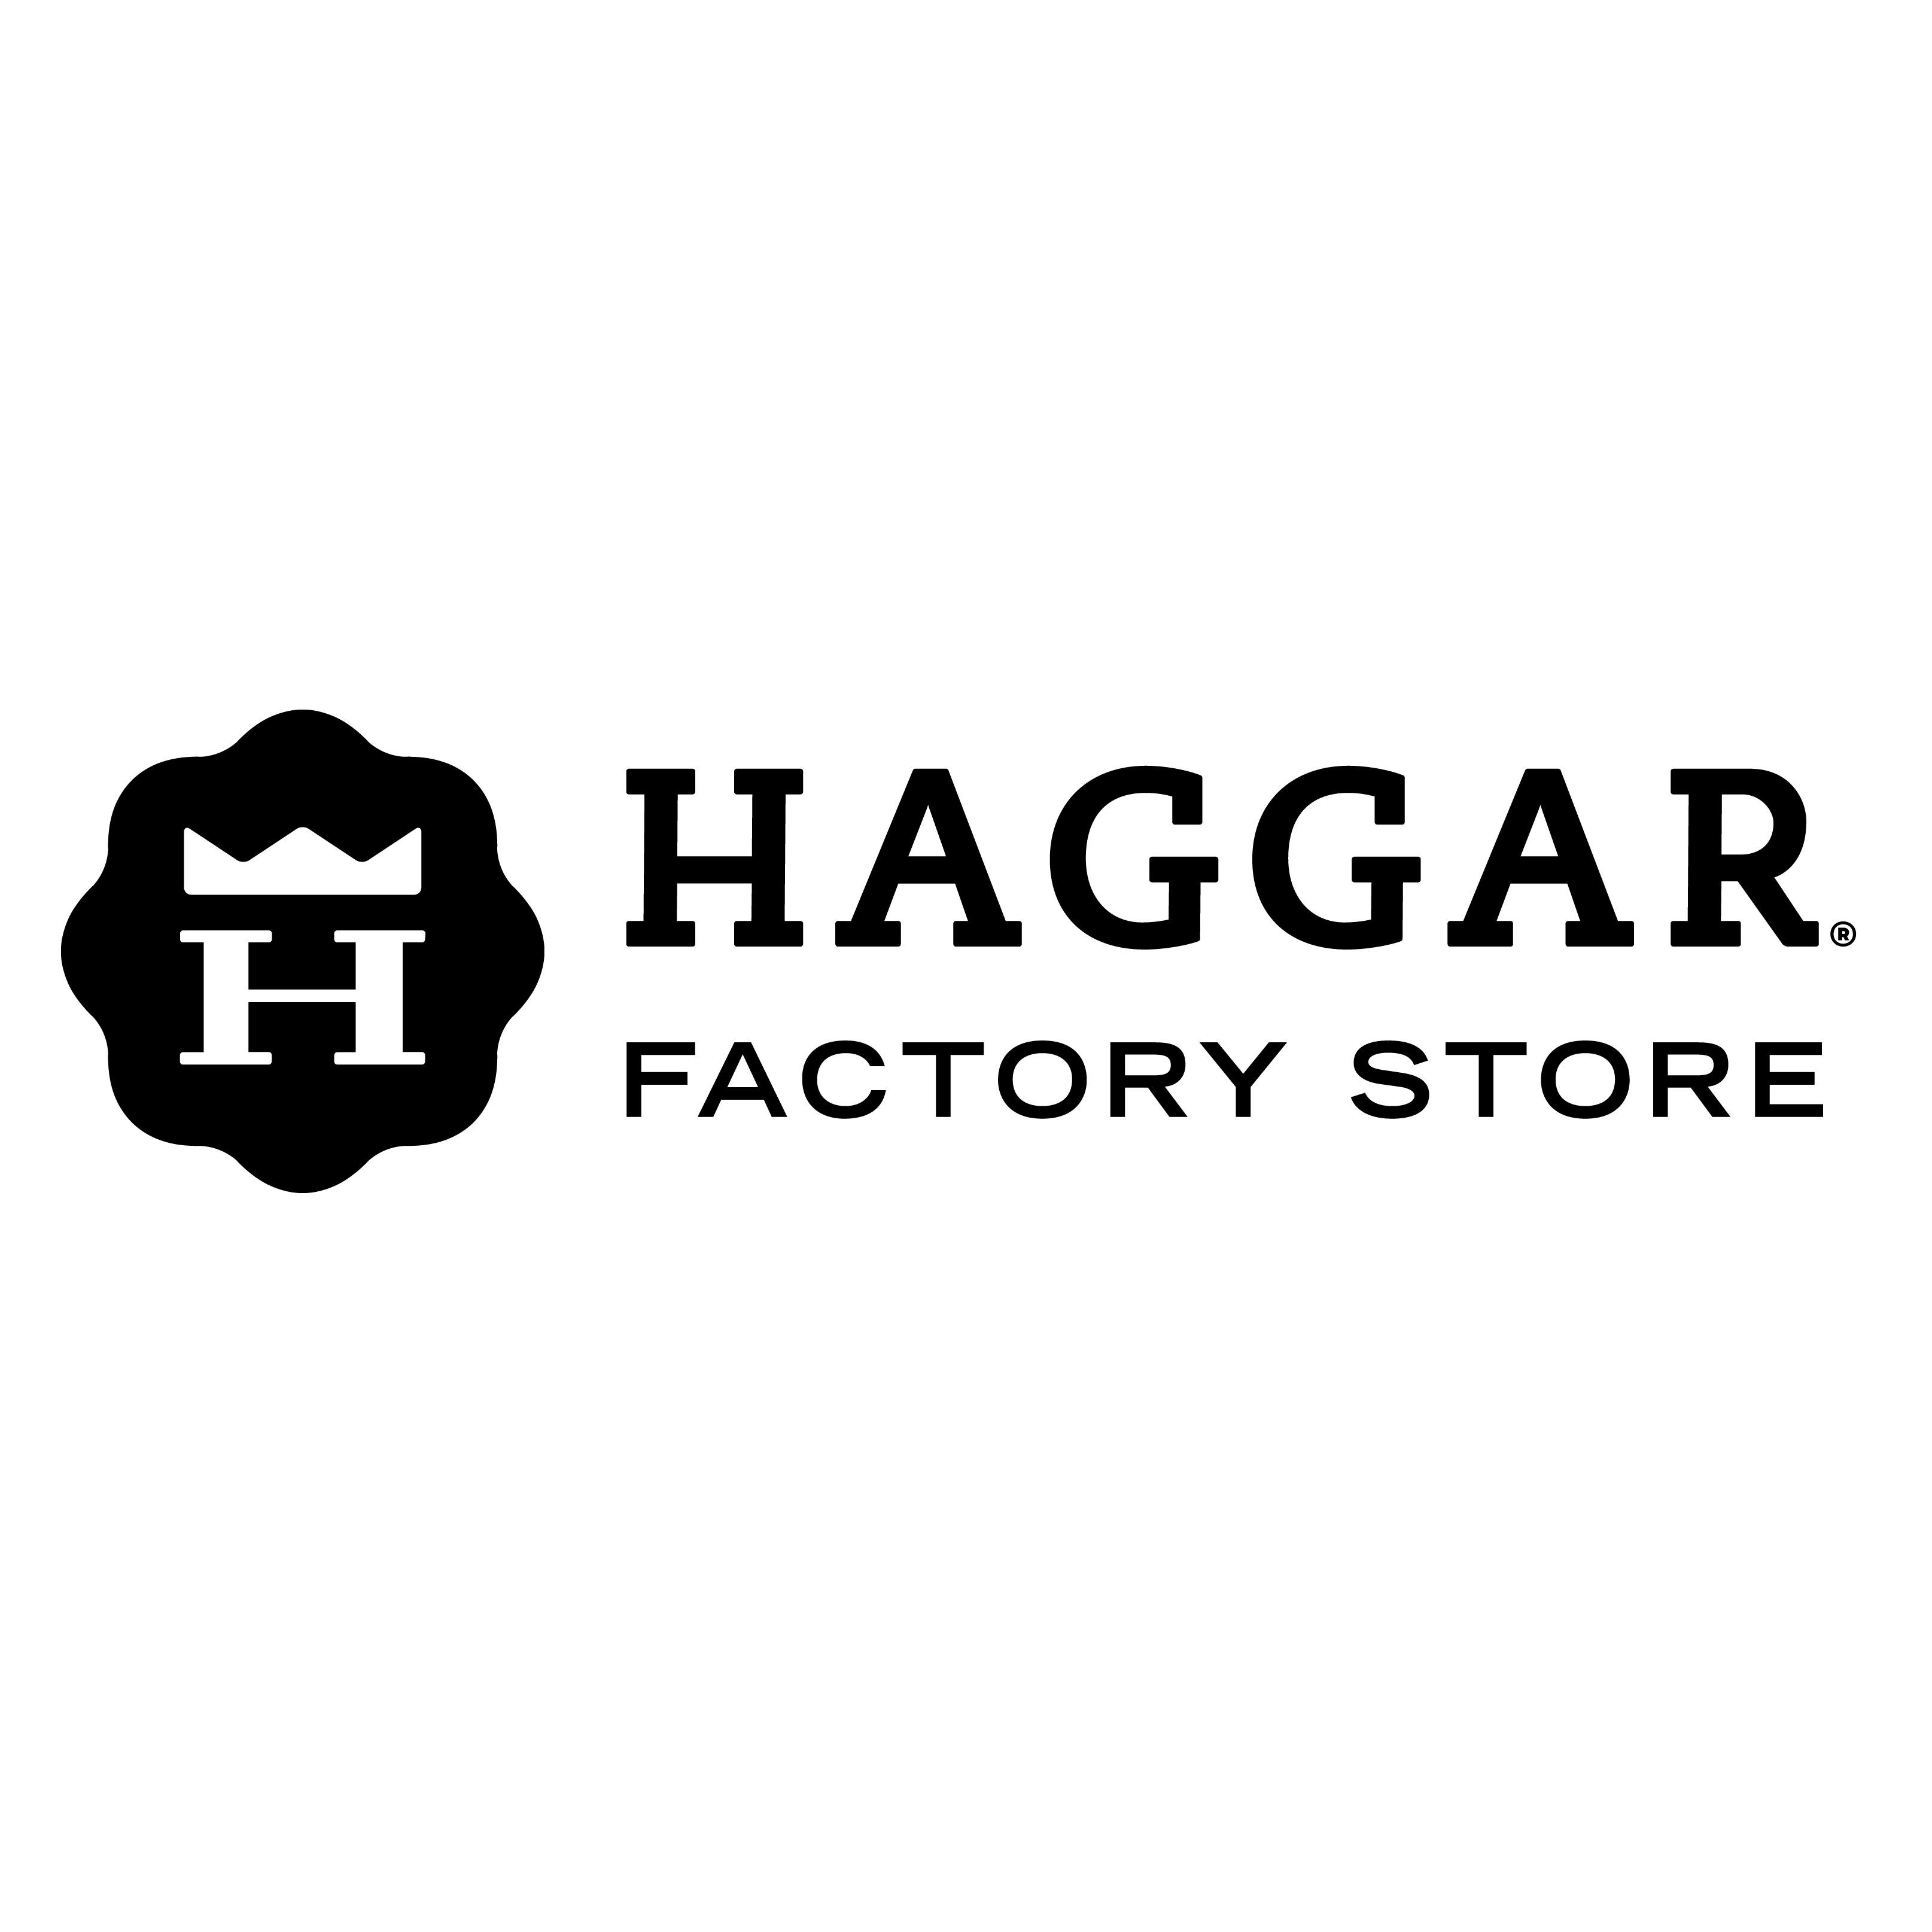 Haggar Factory Store